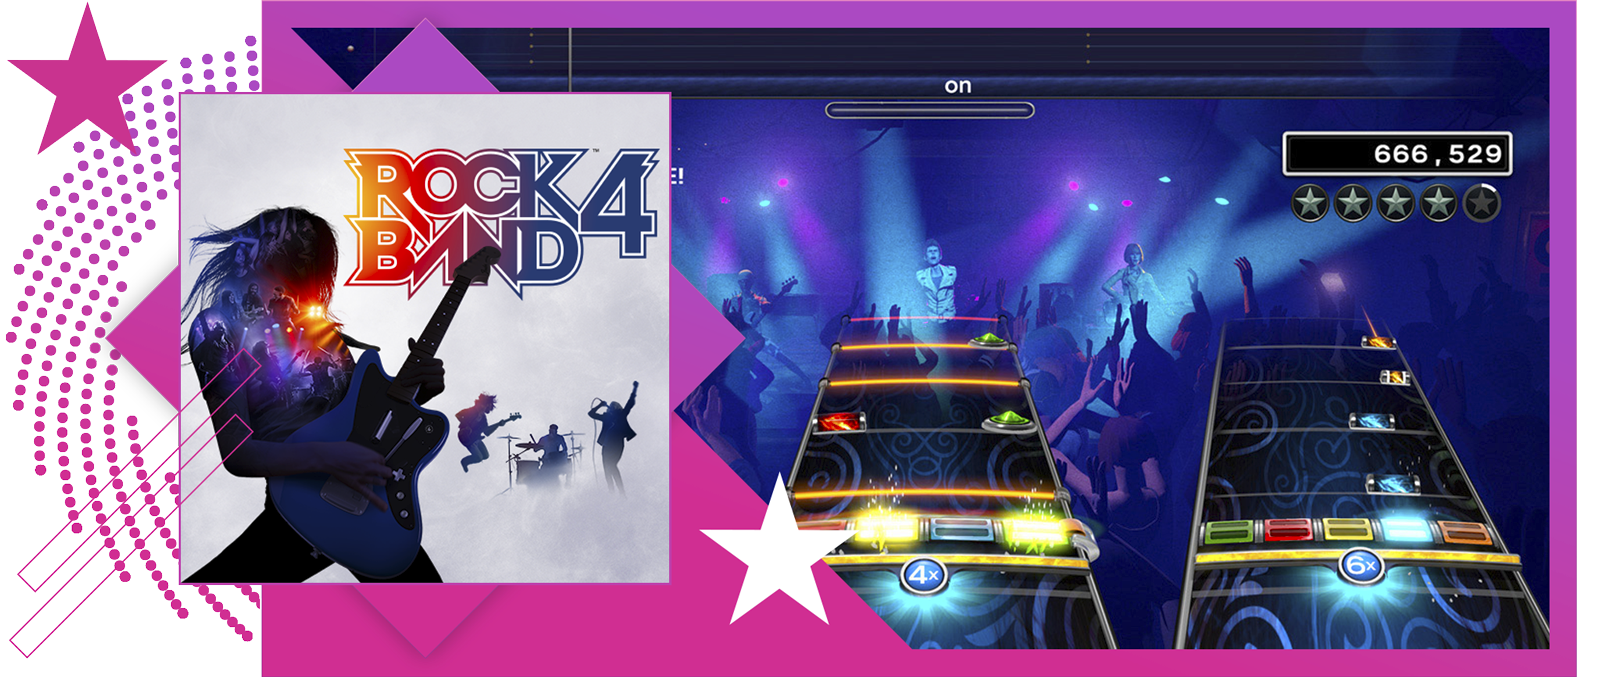 Nejlepší rytmické hry – obrázek s klíčovou grafikou a ukázkou ze hry Rock Band 4